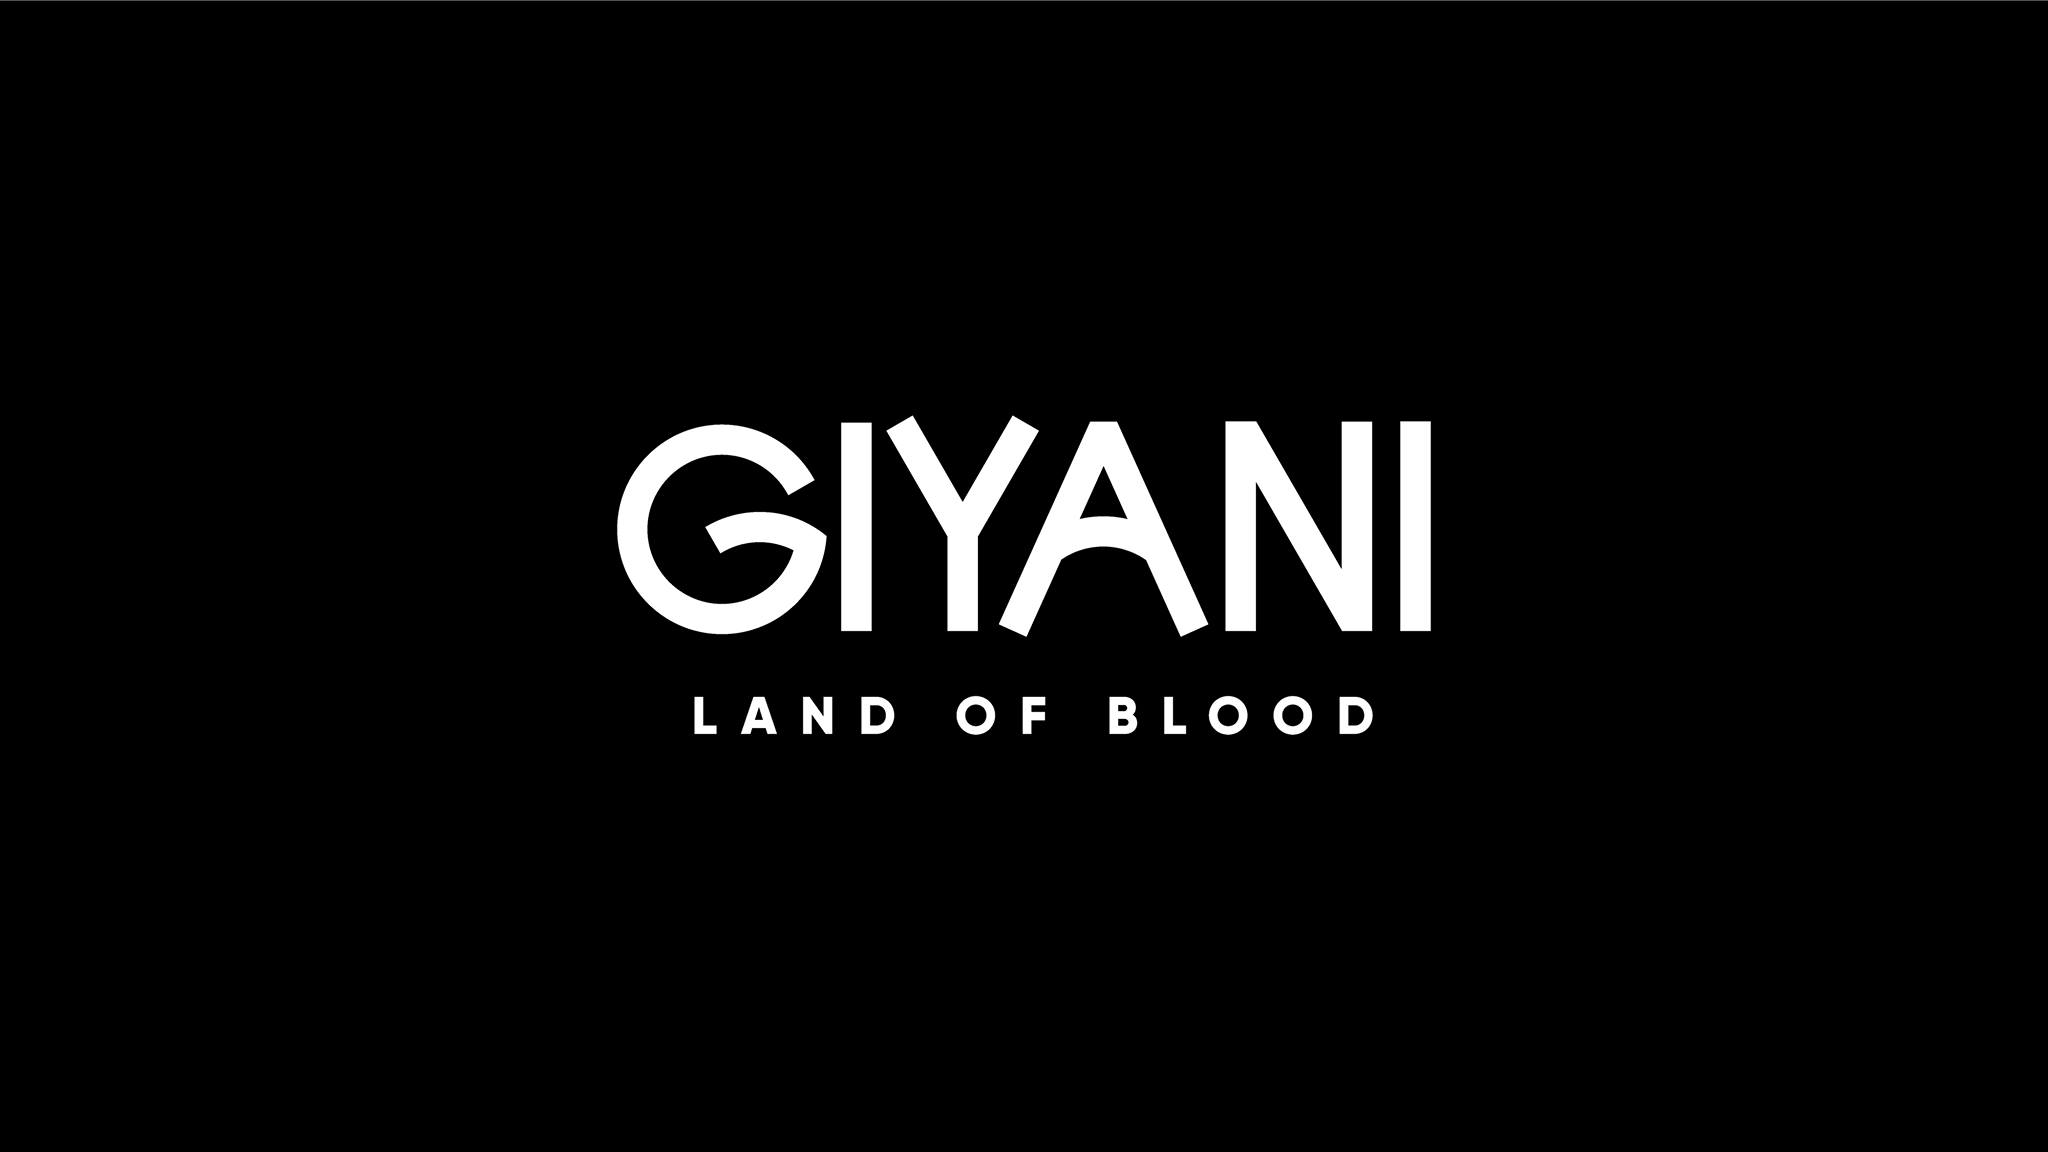 Giyani - Land of Blood SABC